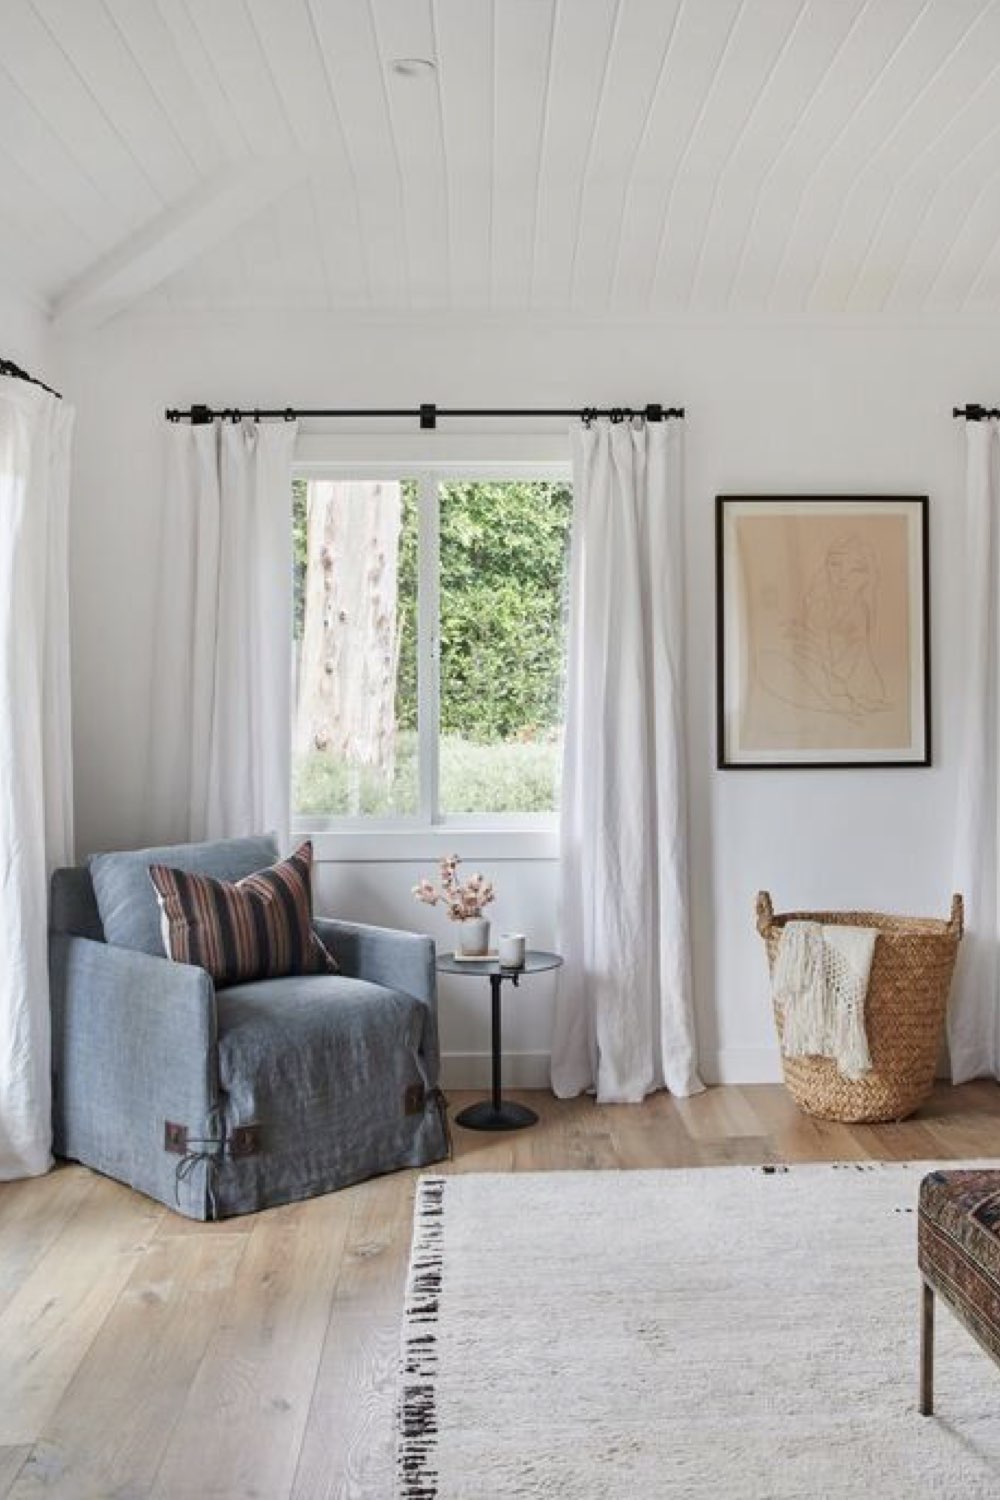 deco chambre parentale tendance grands rideaux blancs jusqu'au sol élégant plafond lambris peint fauteuil panier rotin espace lumineux neutre